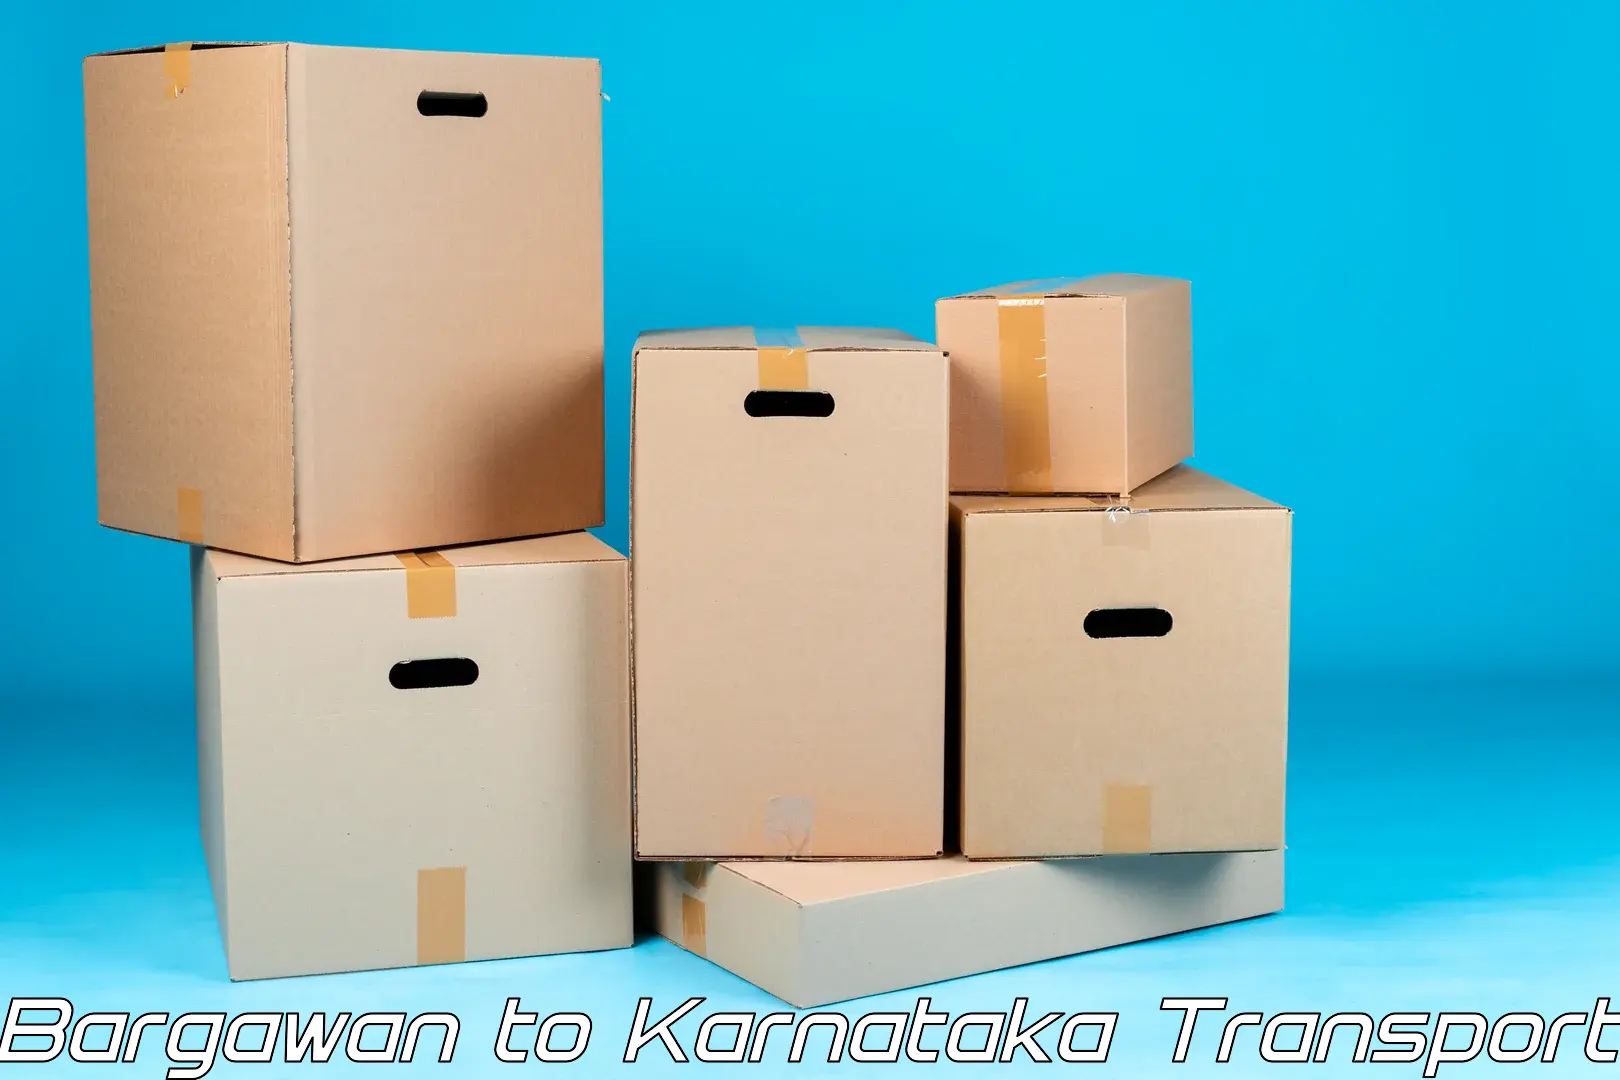 Cargo transport services in Bargawan to Panja Dakshin Kannad